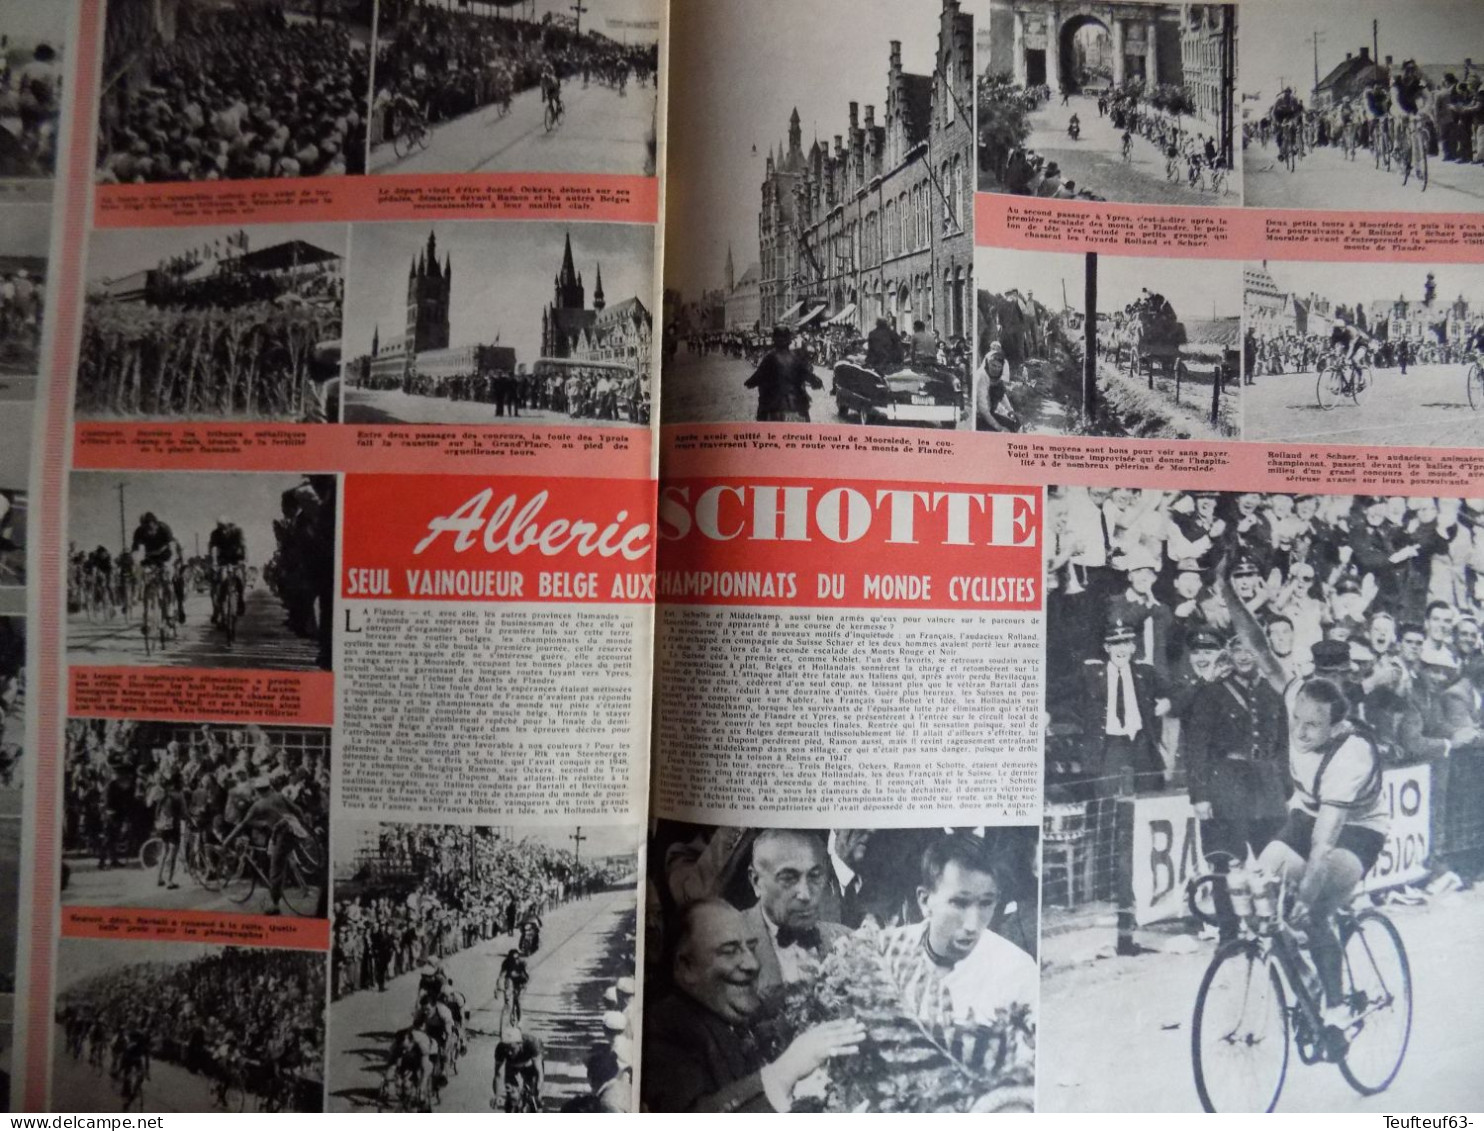 Le Soir Illustré N° 948 Mariage Au Luxembourg - Richard Todd - Cyclisme Alberic Schotte - Docteur Chenevée Homme-triton - Algemene Informatie